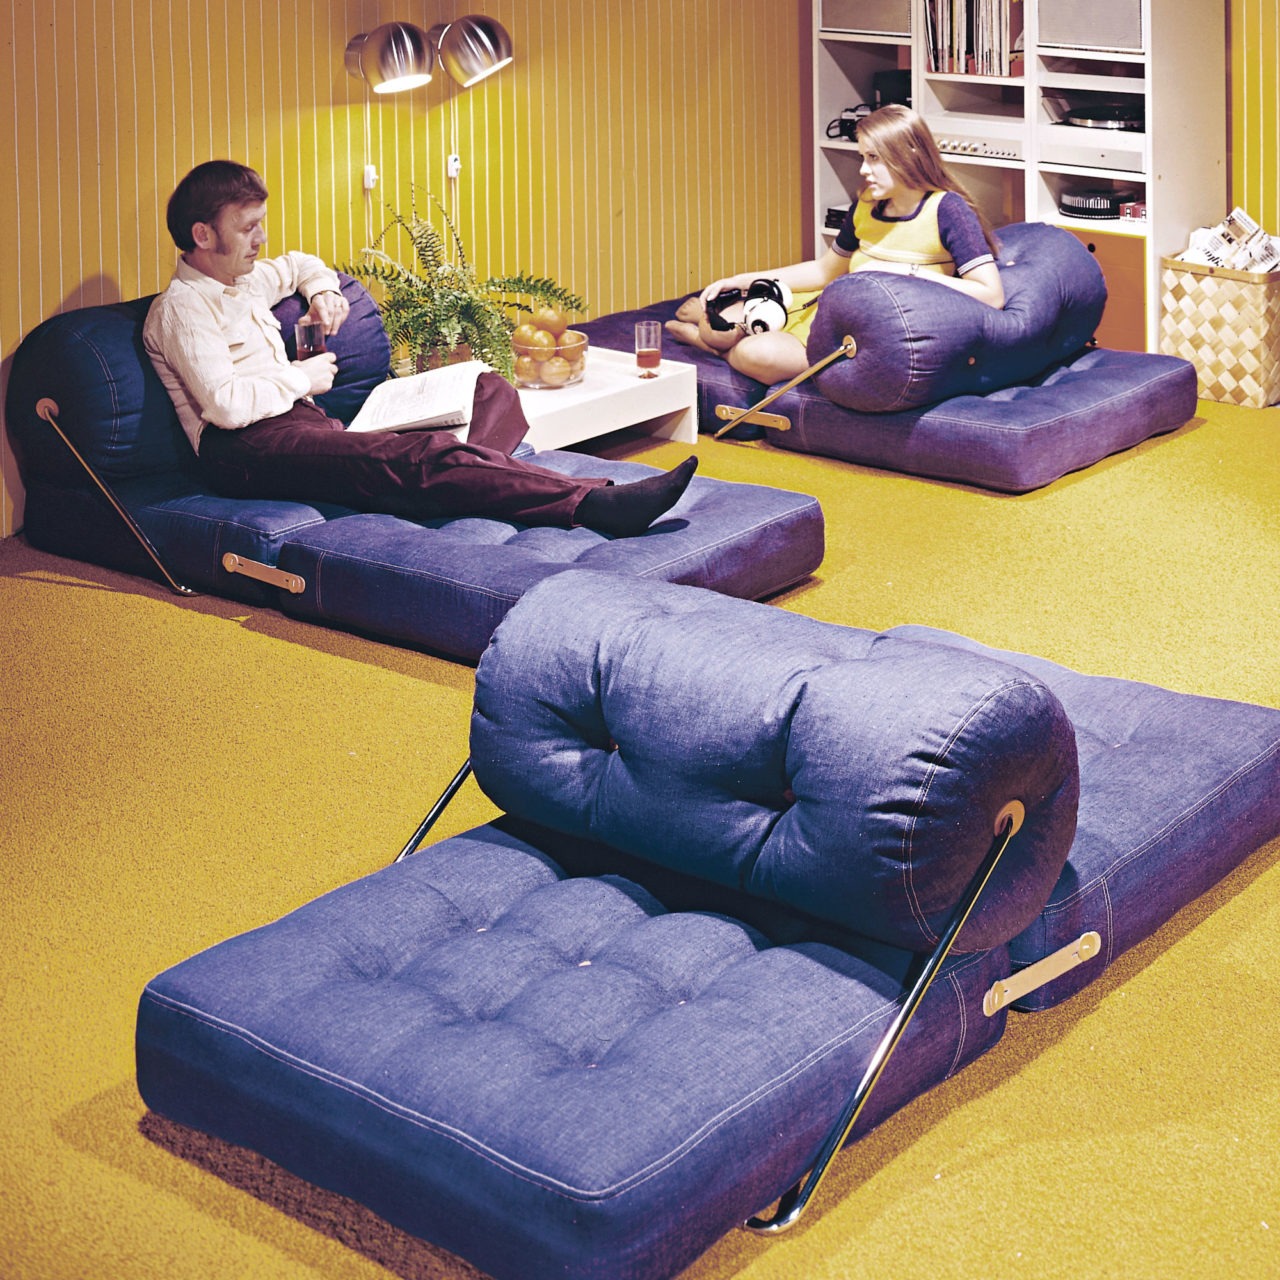 Coussins TAJT recouverts de jean, repliés façon canapé ou dépliés au sol, dans une pièce recouverte de moquette jaune.